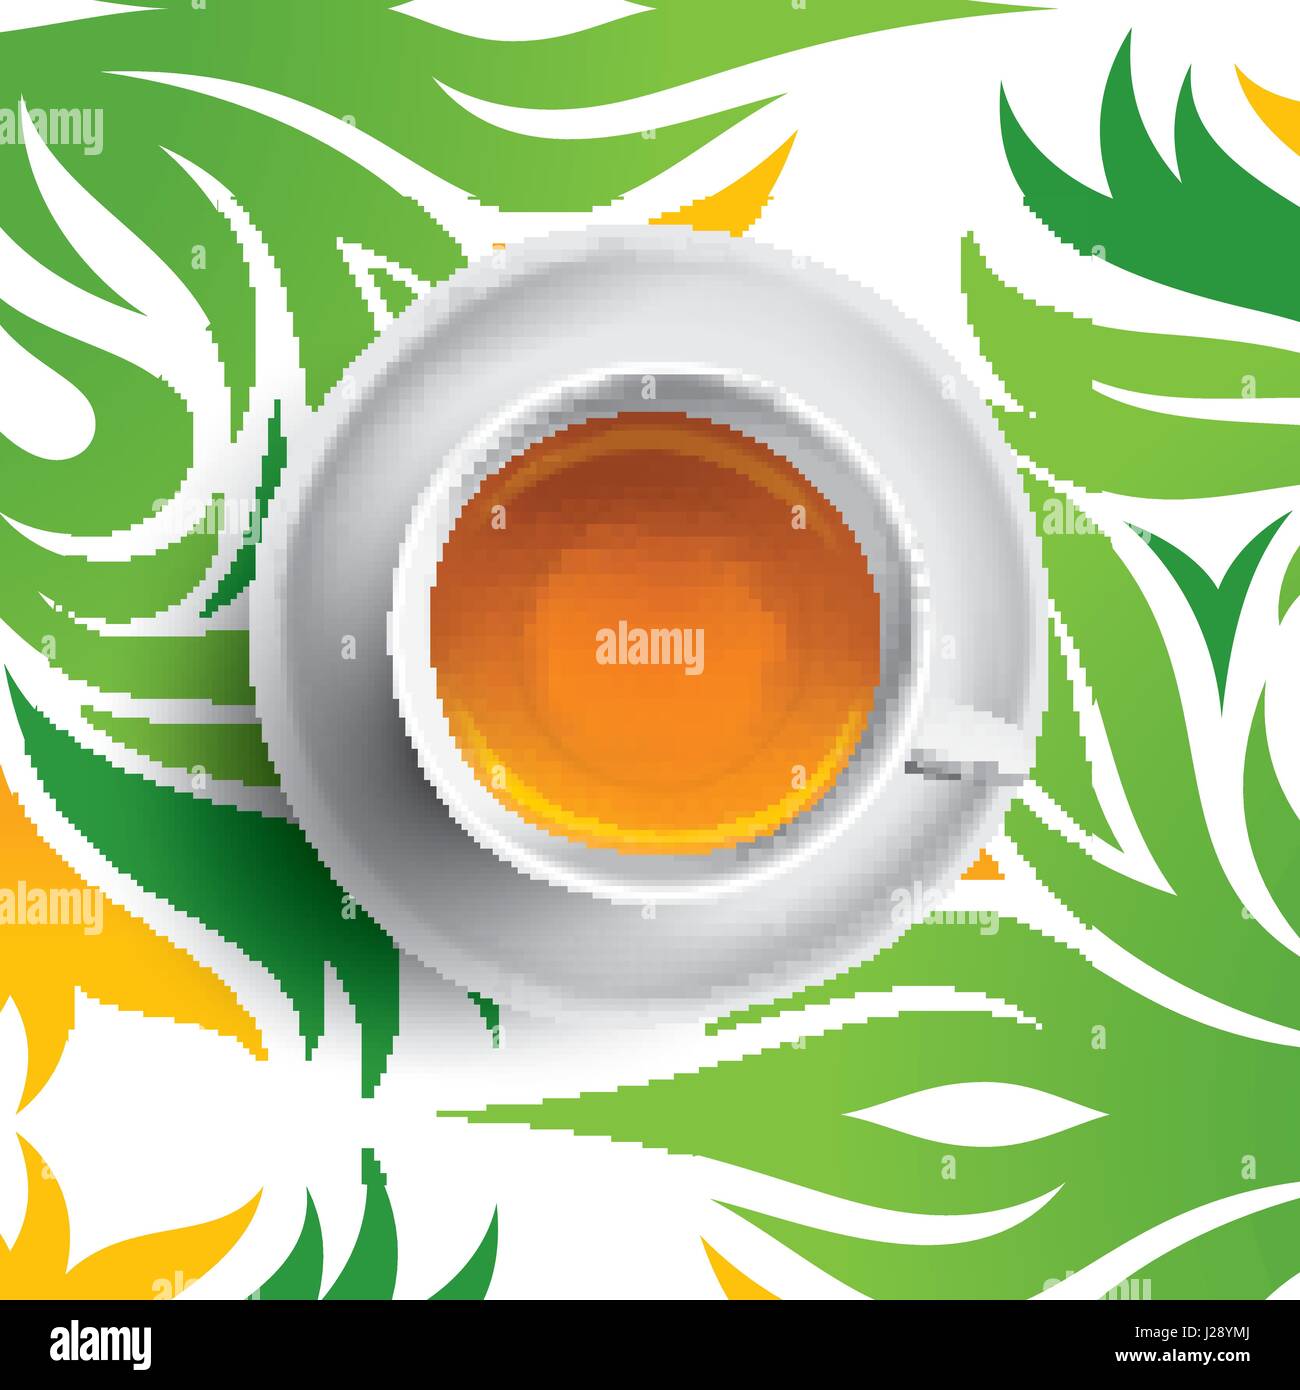 Schwarzer Tee-Tasse-Vektor-Illustration. Tee auf grüne und gelbe Blumenkarte Stock Vektor